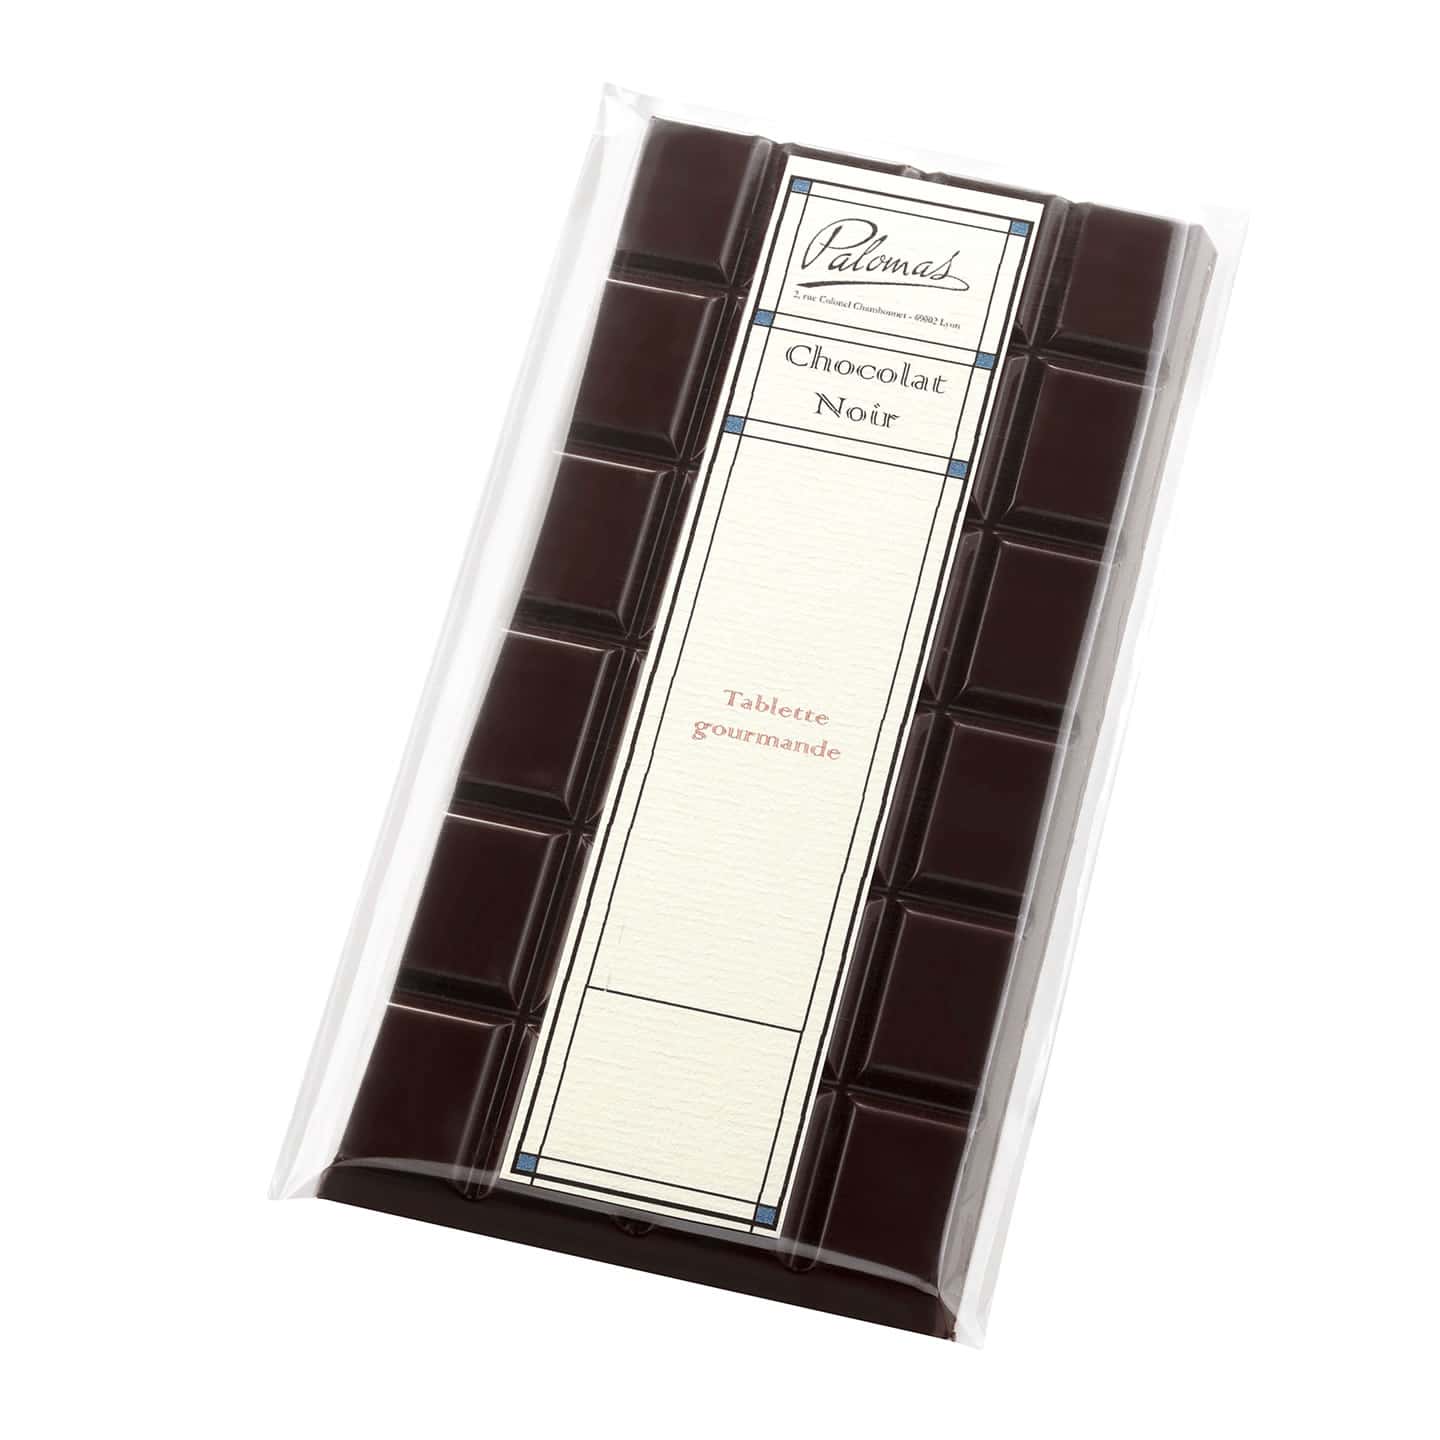 Tablette Chocolat Noir Caramel Beurre Salé 72% 120g